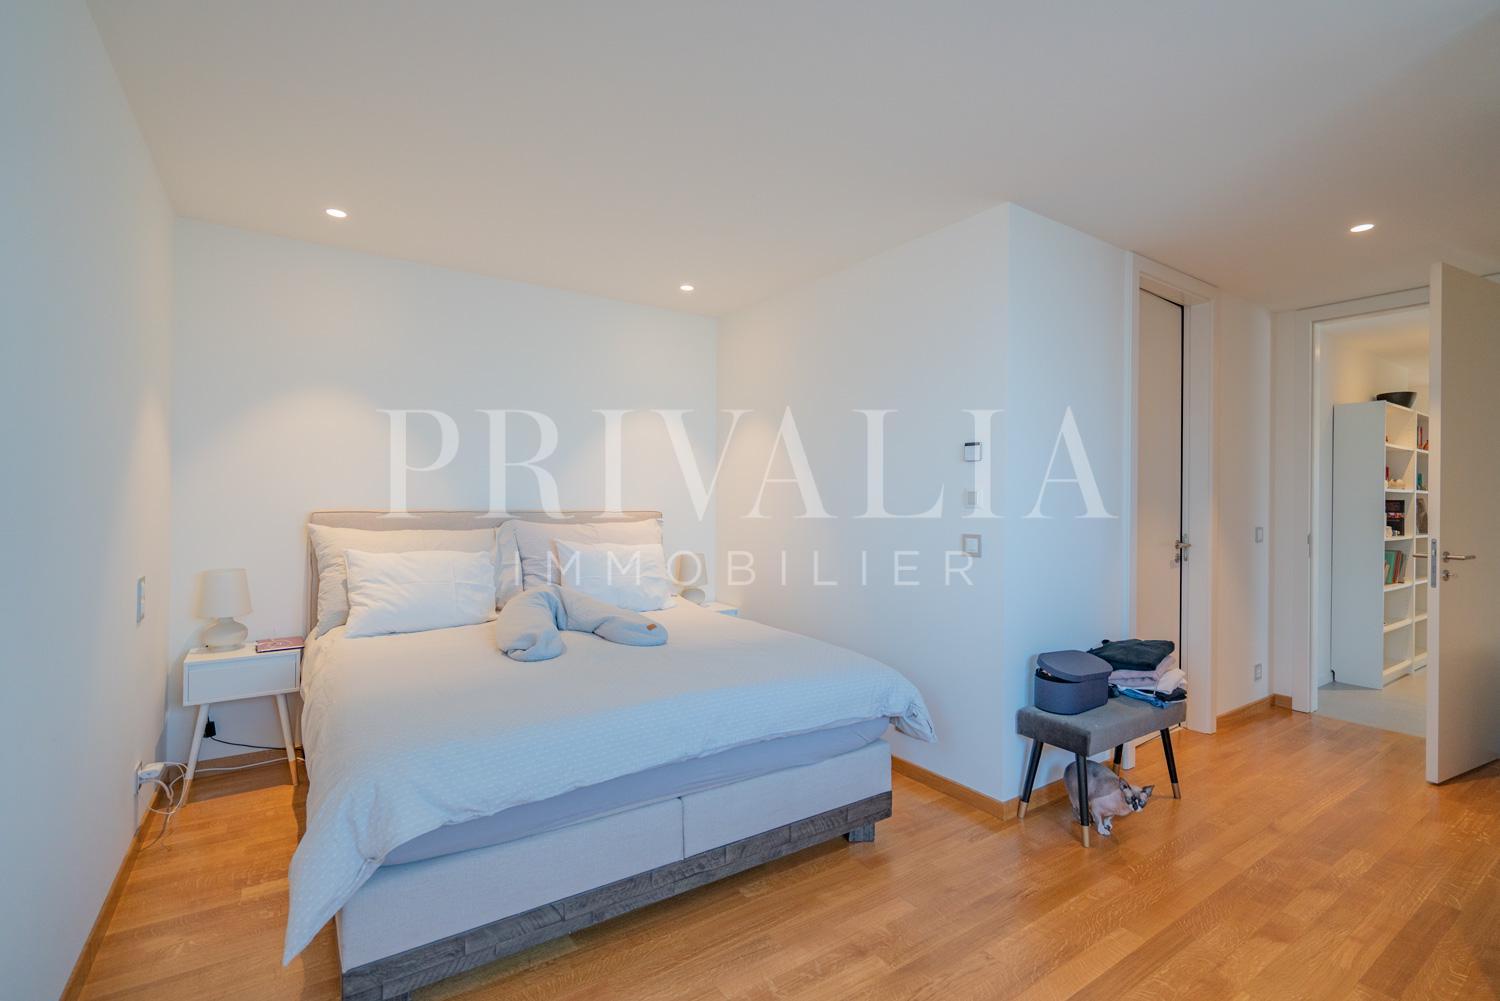 PrivaliaBel appartement de 6 pièces au sein d’une nouvelle résidence haut de gamme